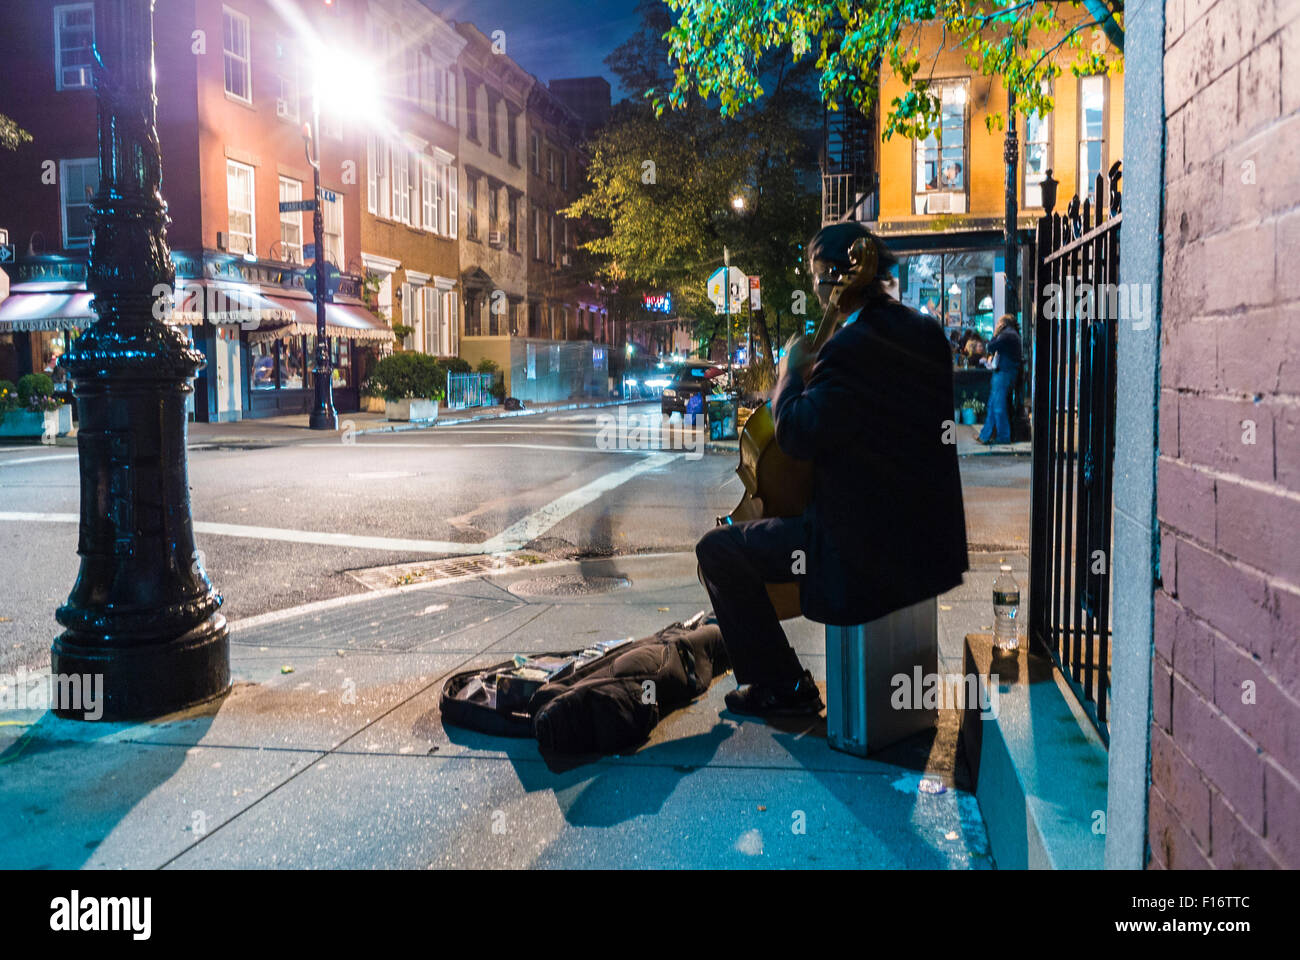 La Ciudad de Nueva York, EE.UU., escenas callejeras, viejo músico tocando la música clásica, en la esquina de la calle en Greenwich Village en la noche Foto de stock